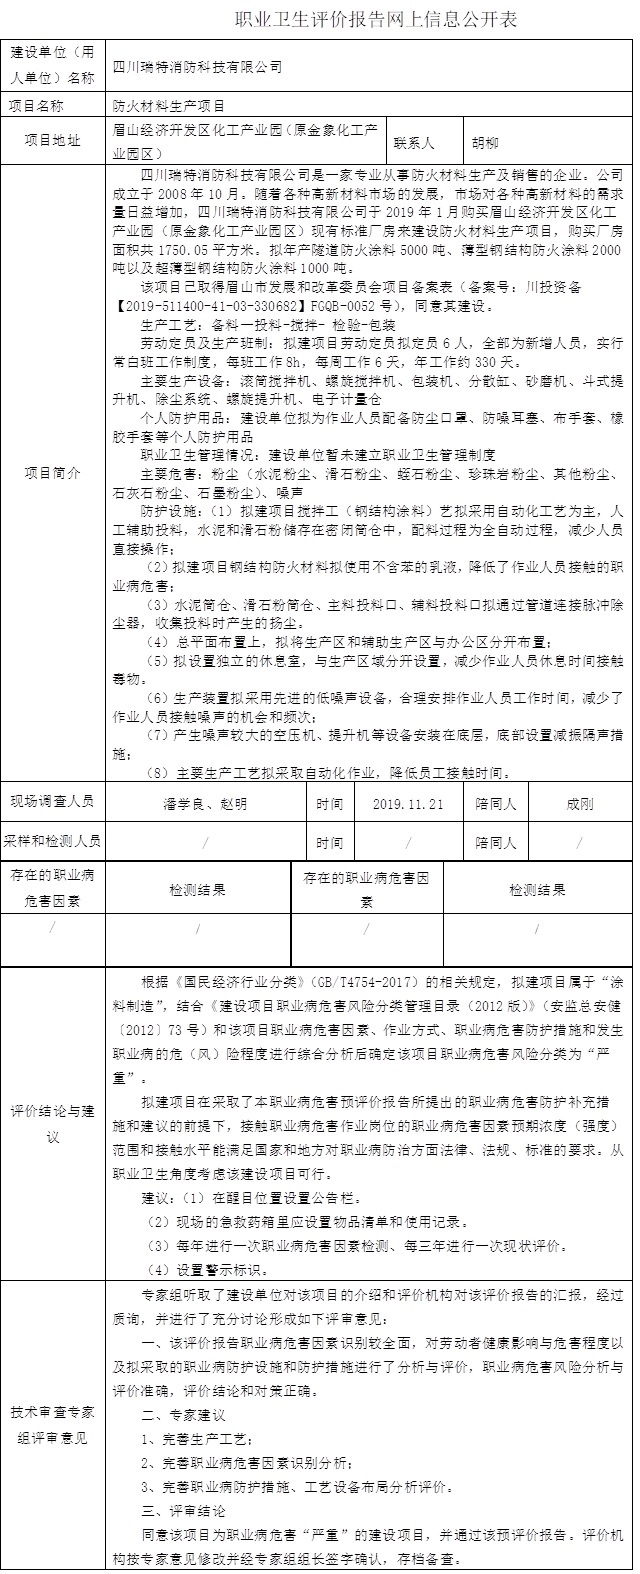 四川瑞特消防科技有限公司防火材料生产项目职业病预评价.jpg